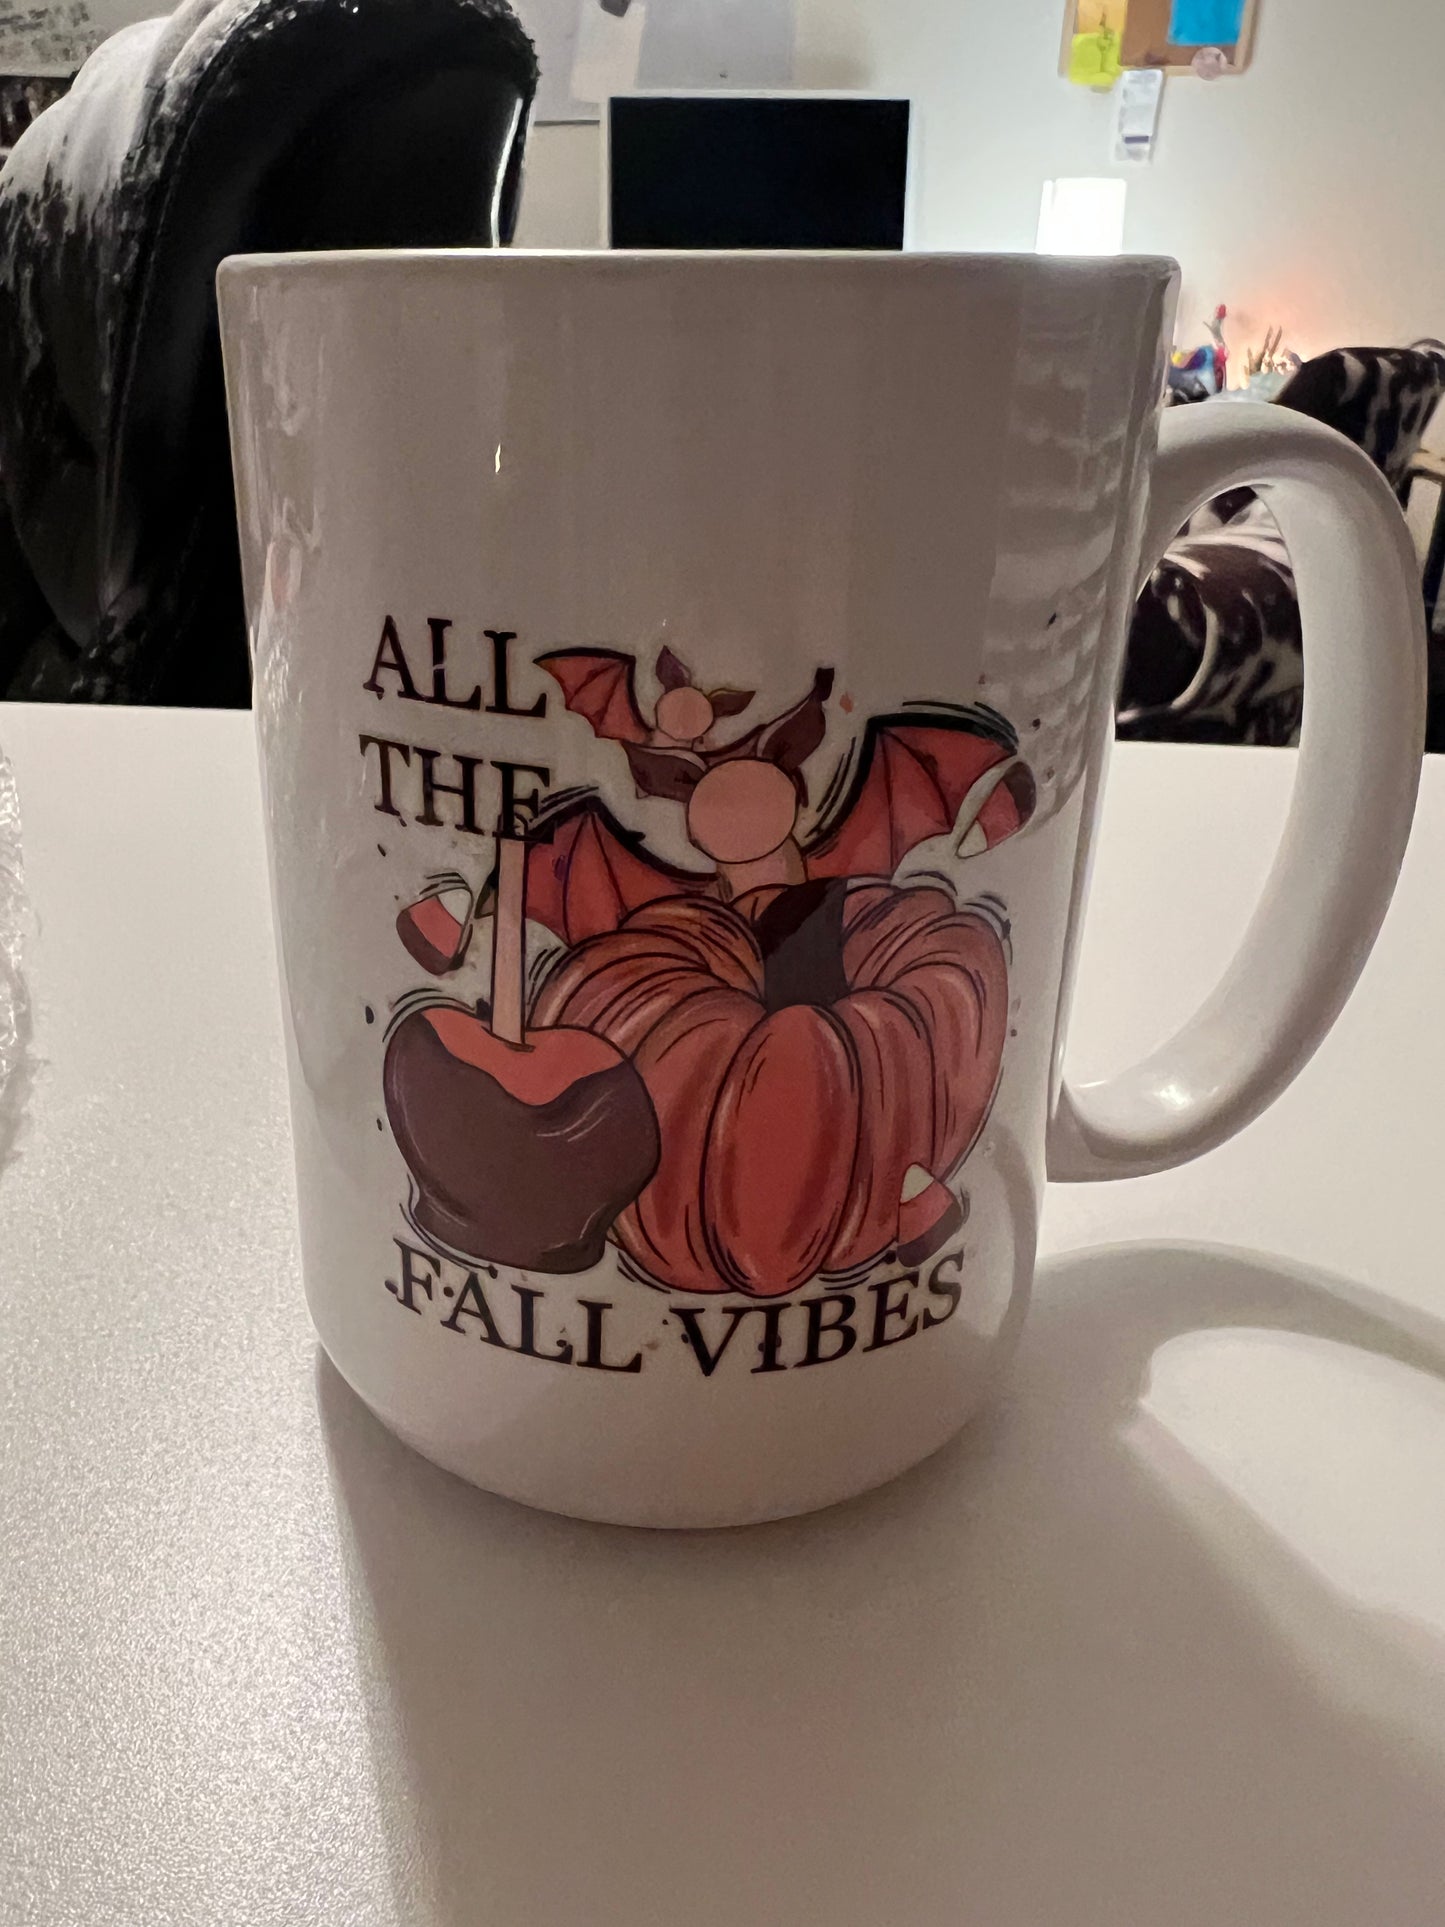 All The Fall Vibes Coffee Mug